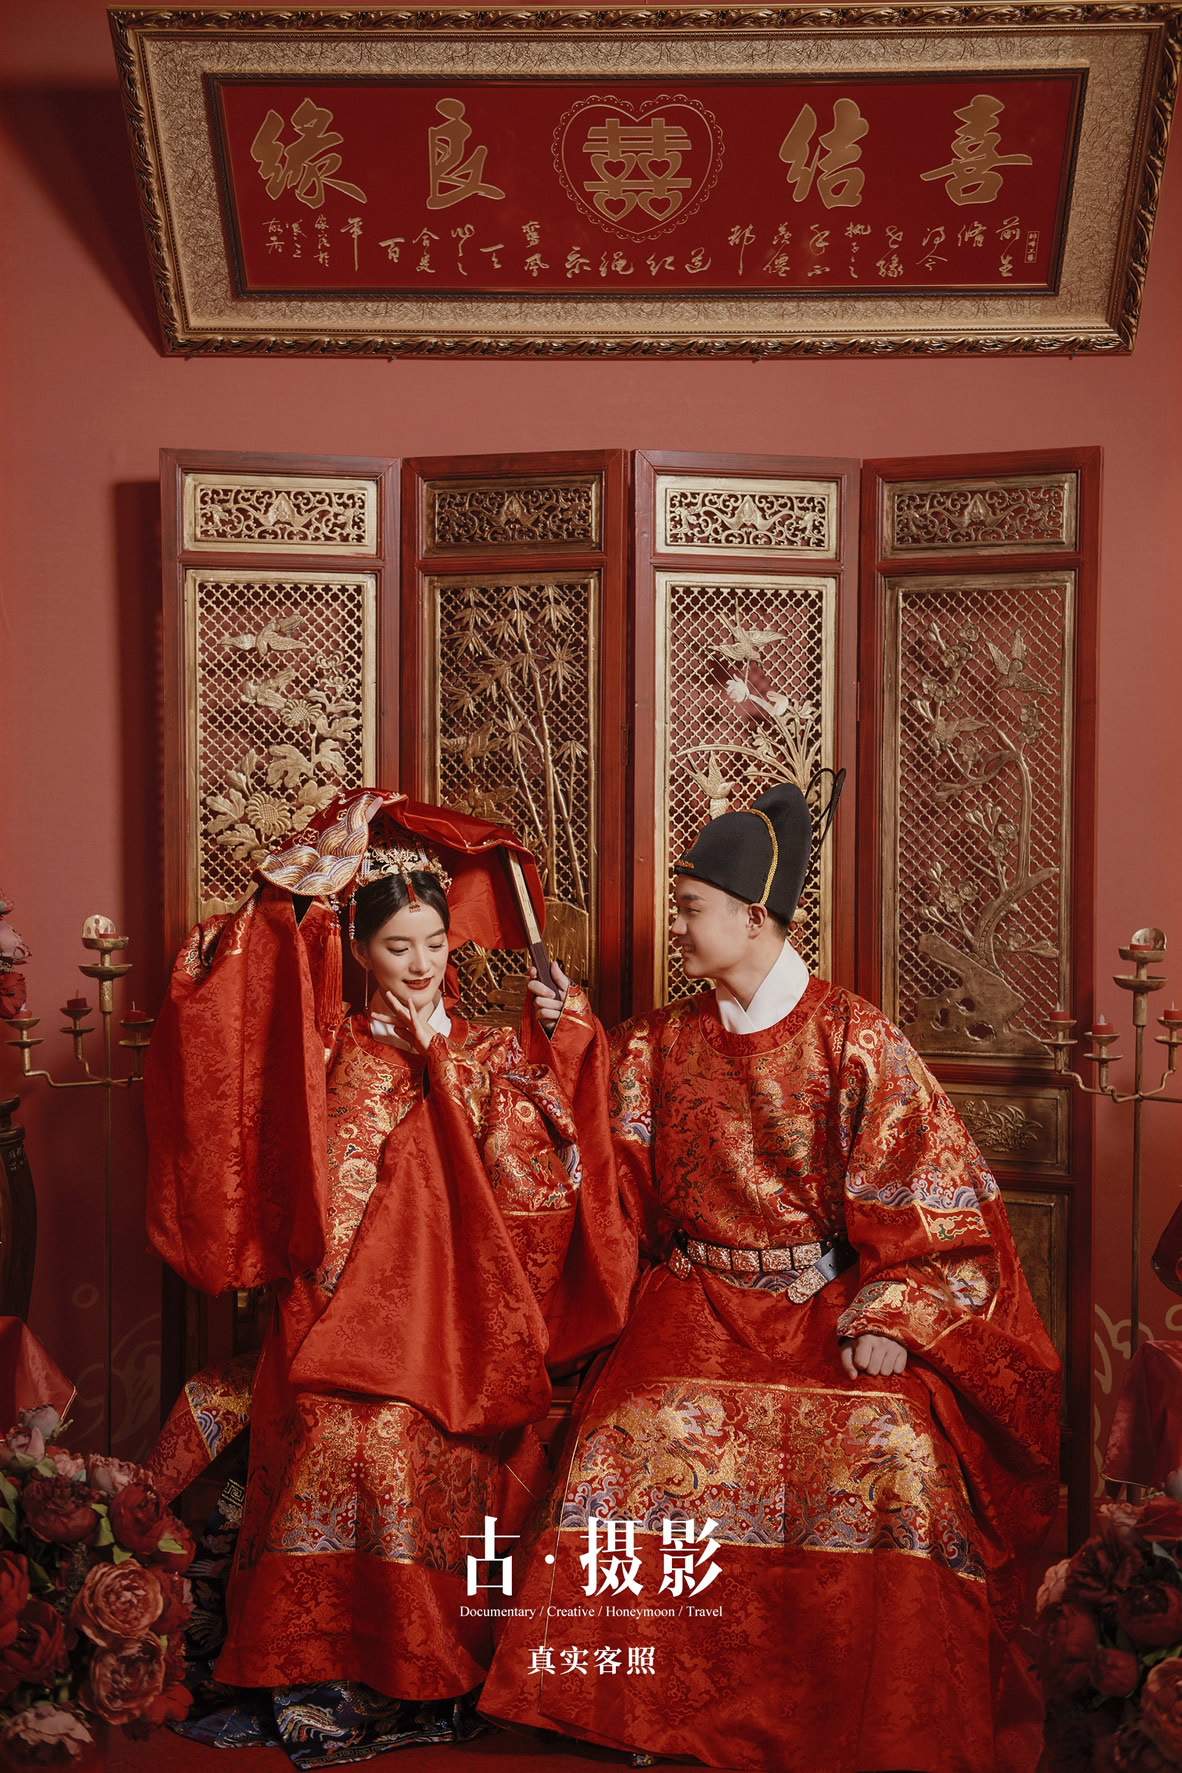 岳先生 刘小姐 - 每日客照 - 古摄影婚纱艺术-古摄影成都婚纱摄影艺术摄影网